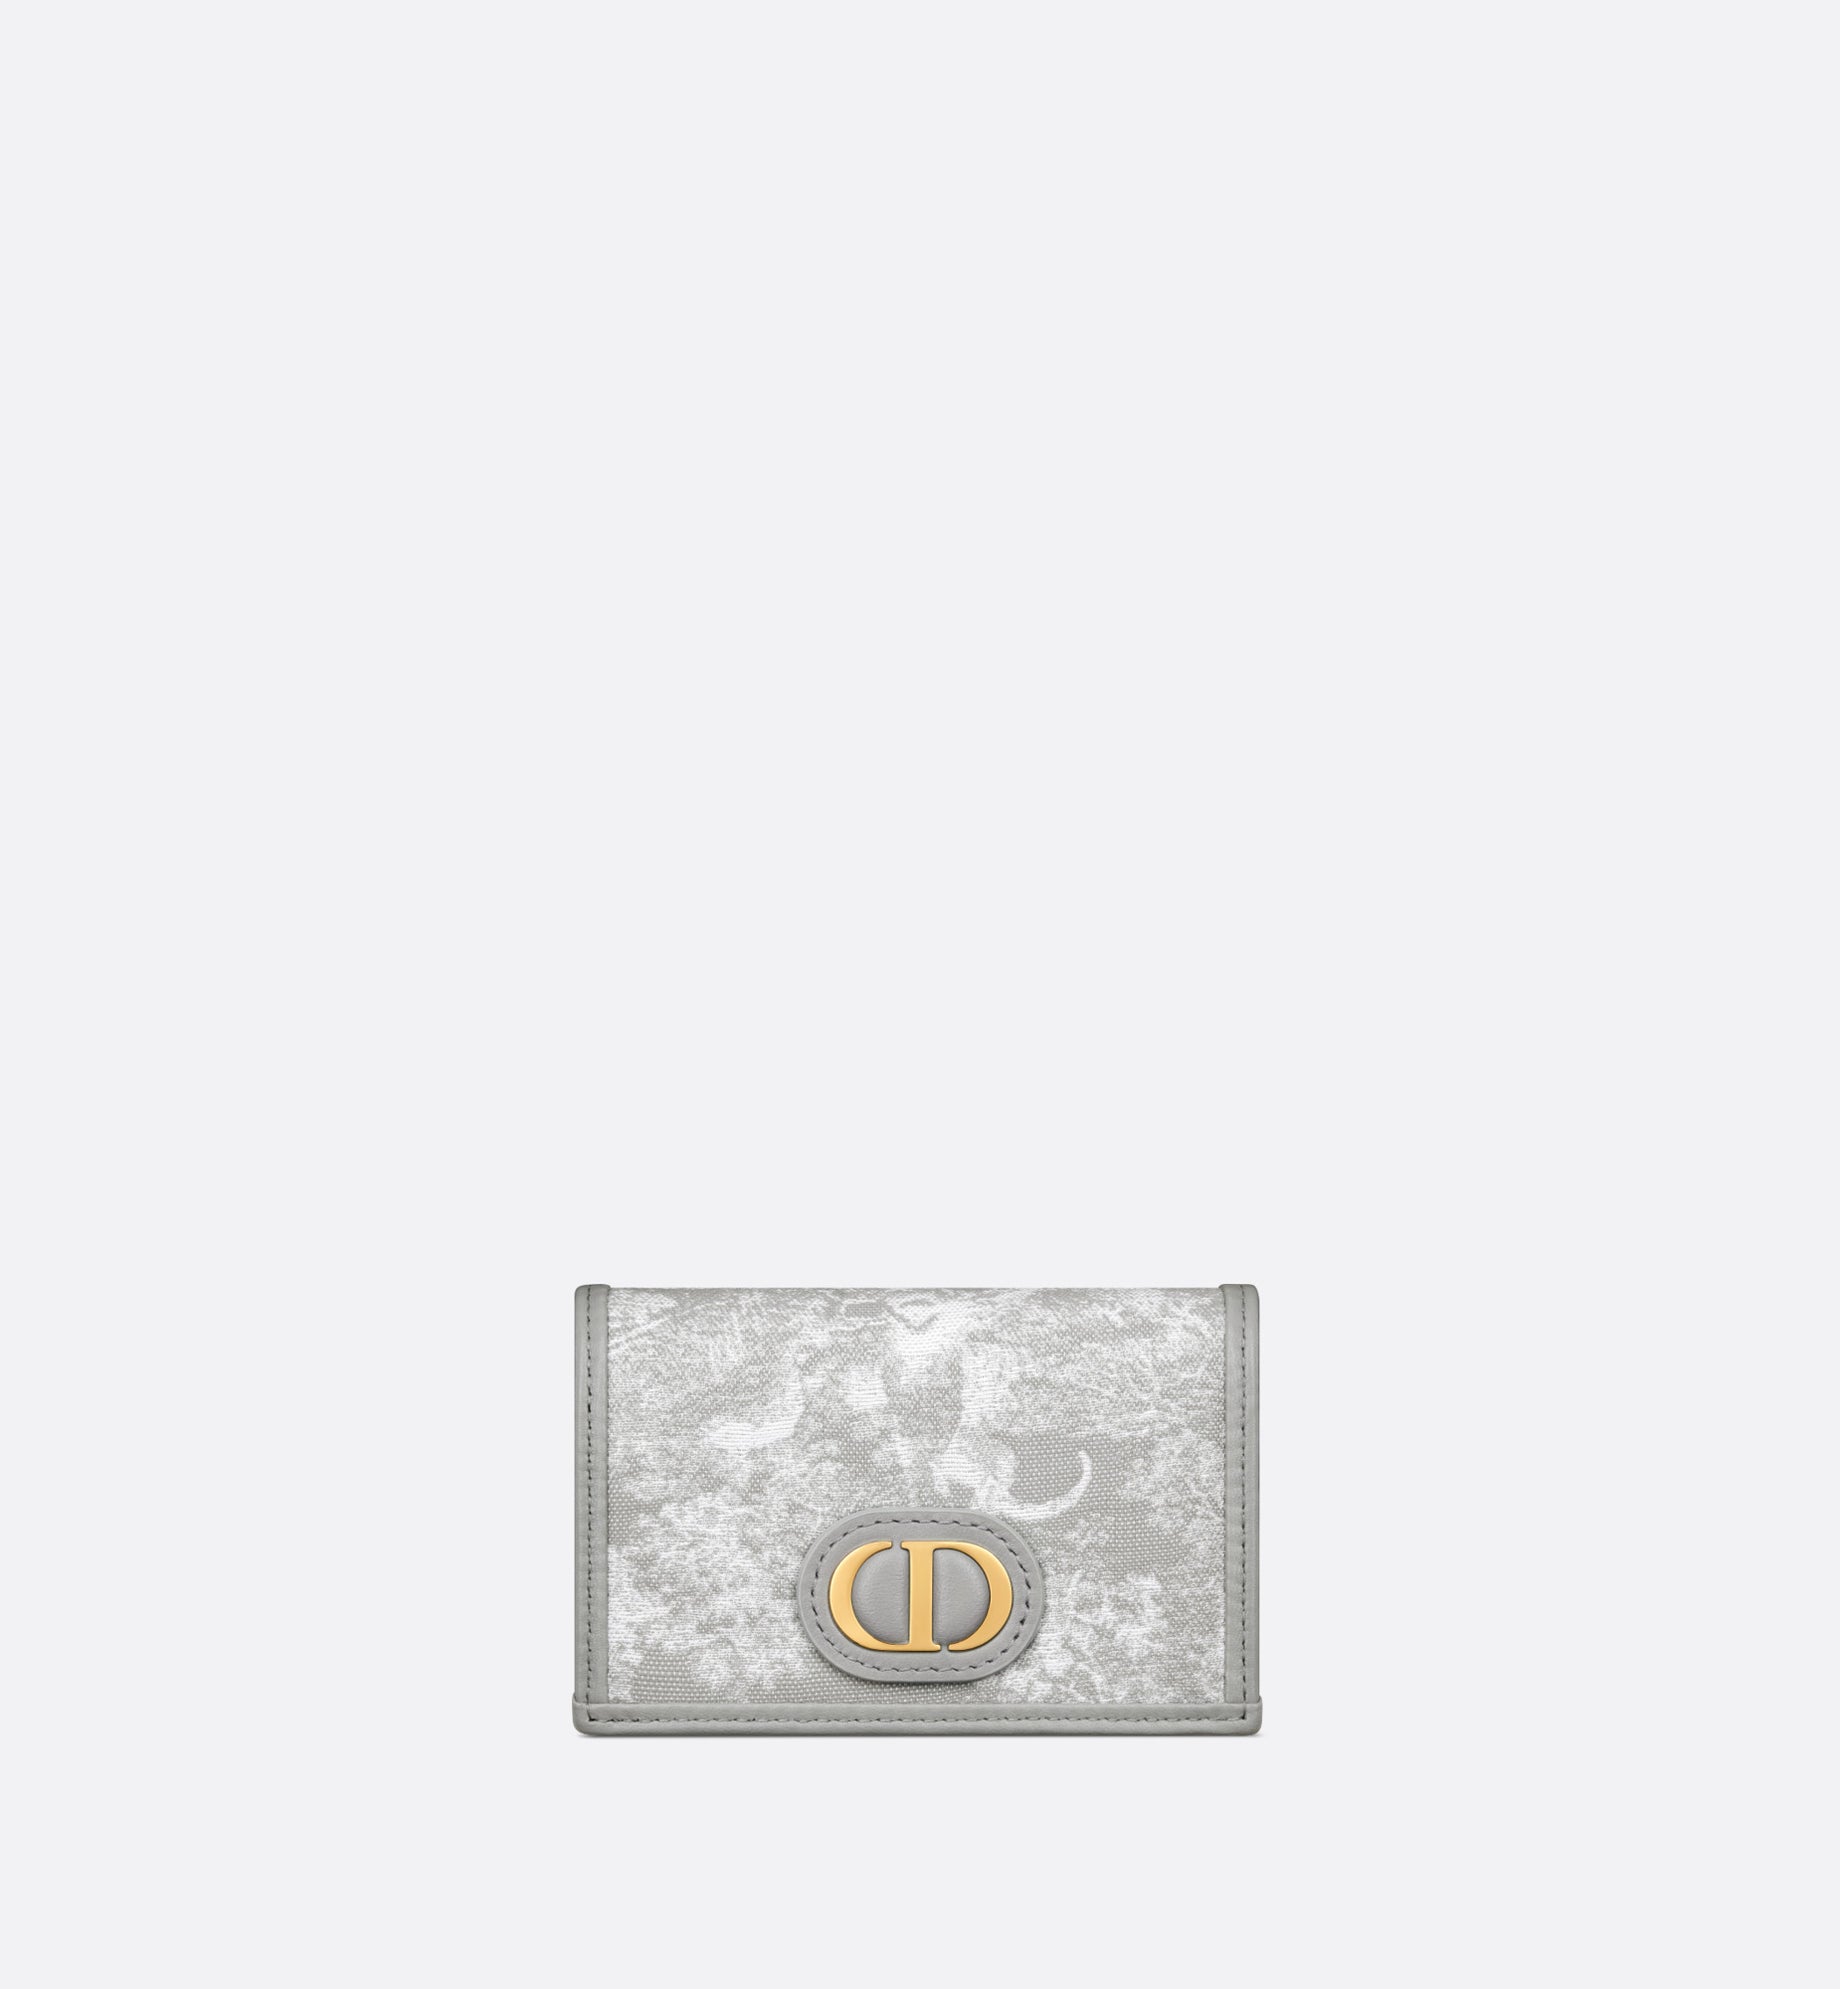 30 Montaigne Glycine Wallet • Gray Toile de Jouy Reverse Jacquard